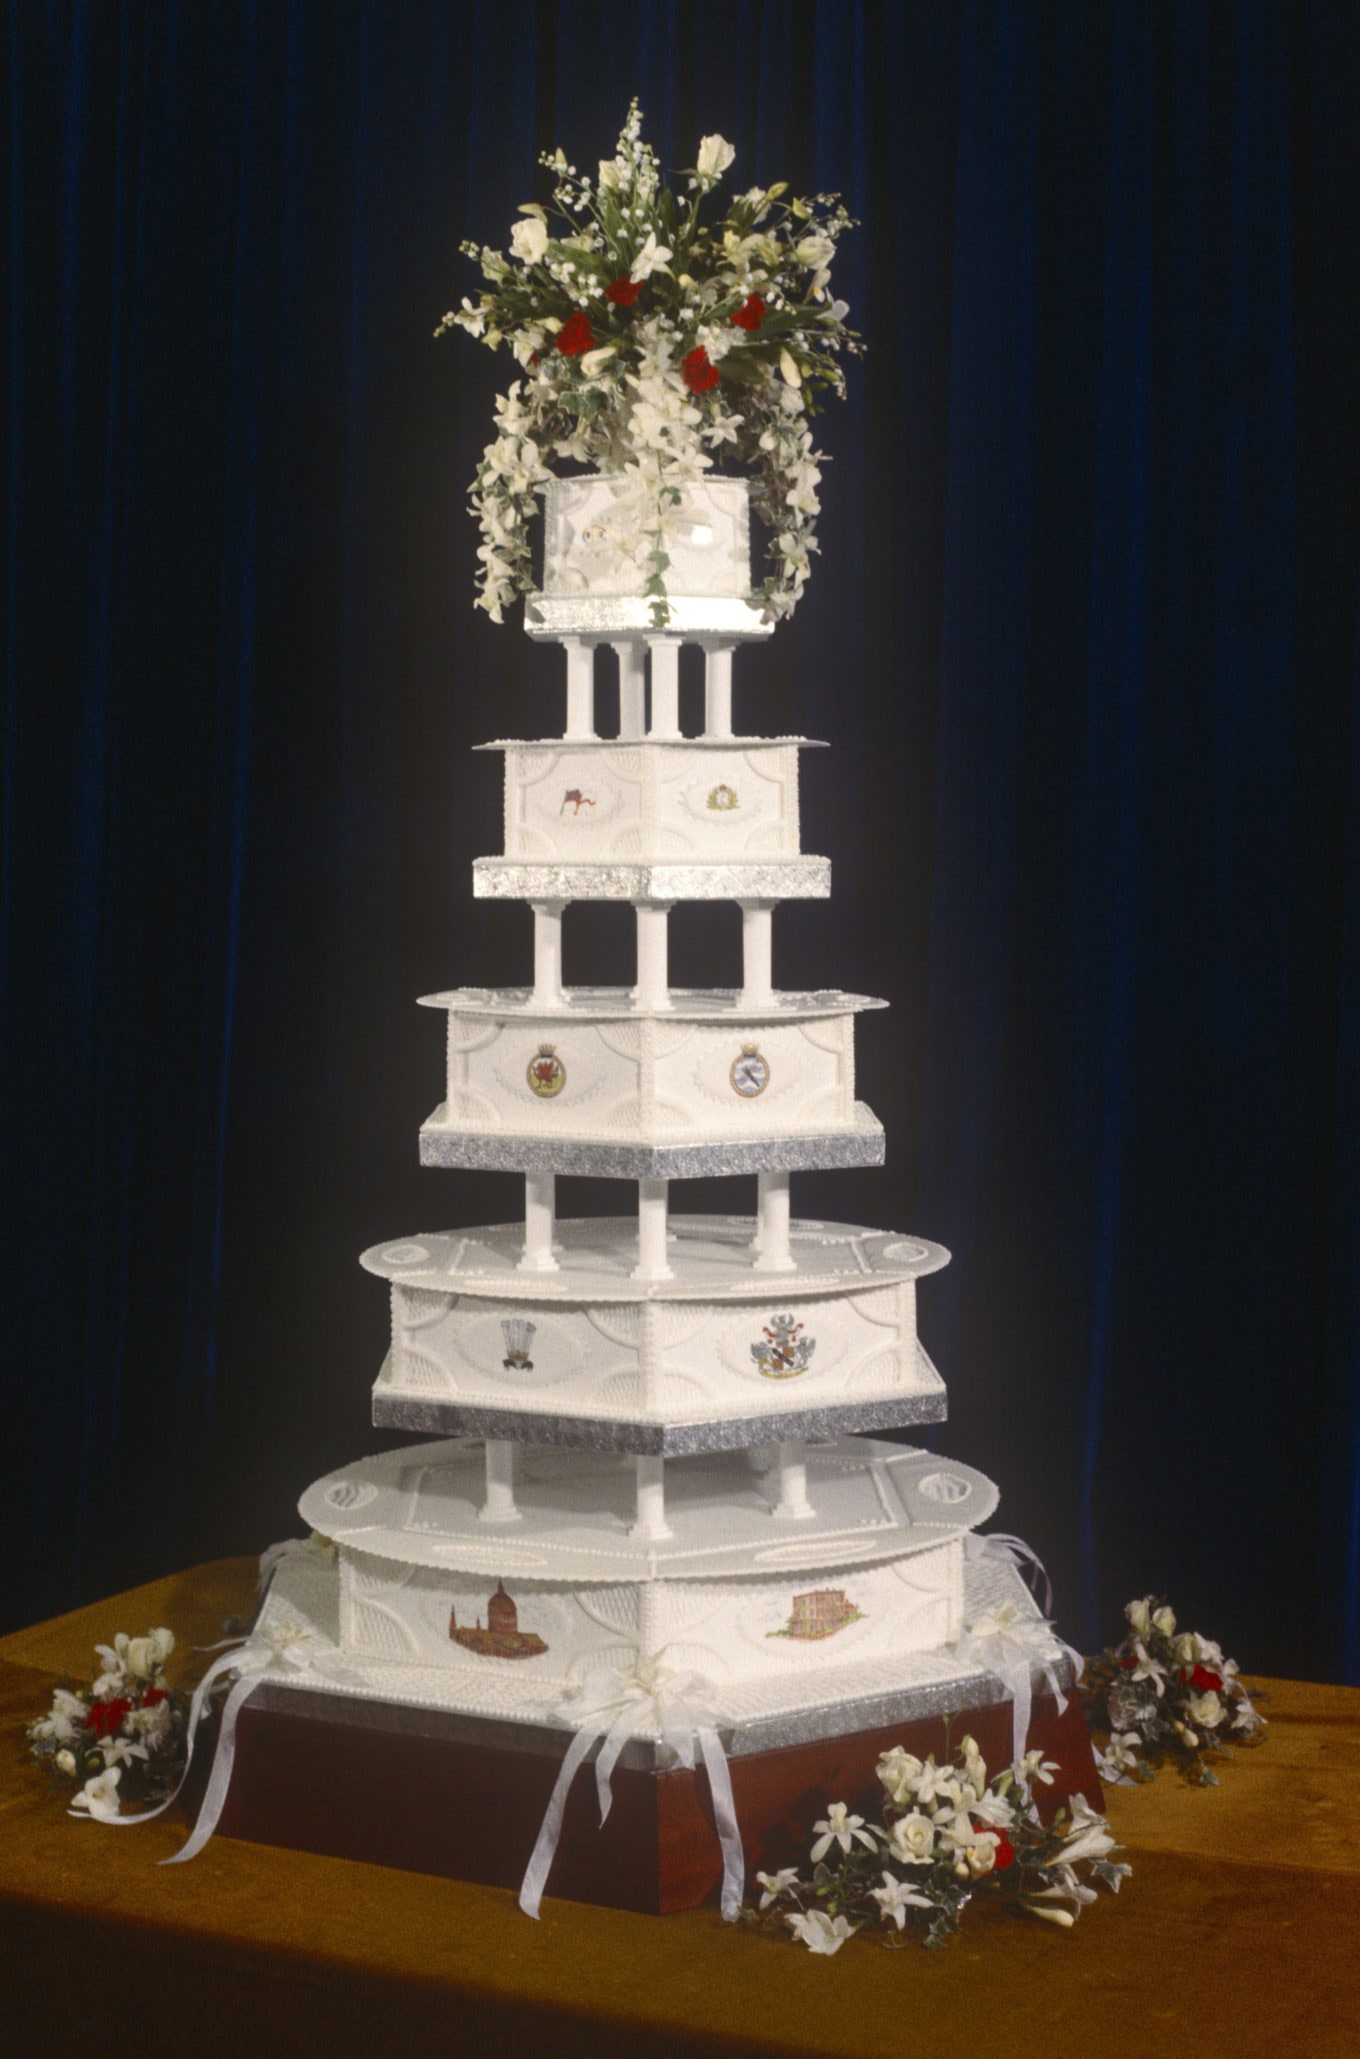 Любой желающий может стать обладателем куска свадебного торта принцессы Дианы и принца Чарльза